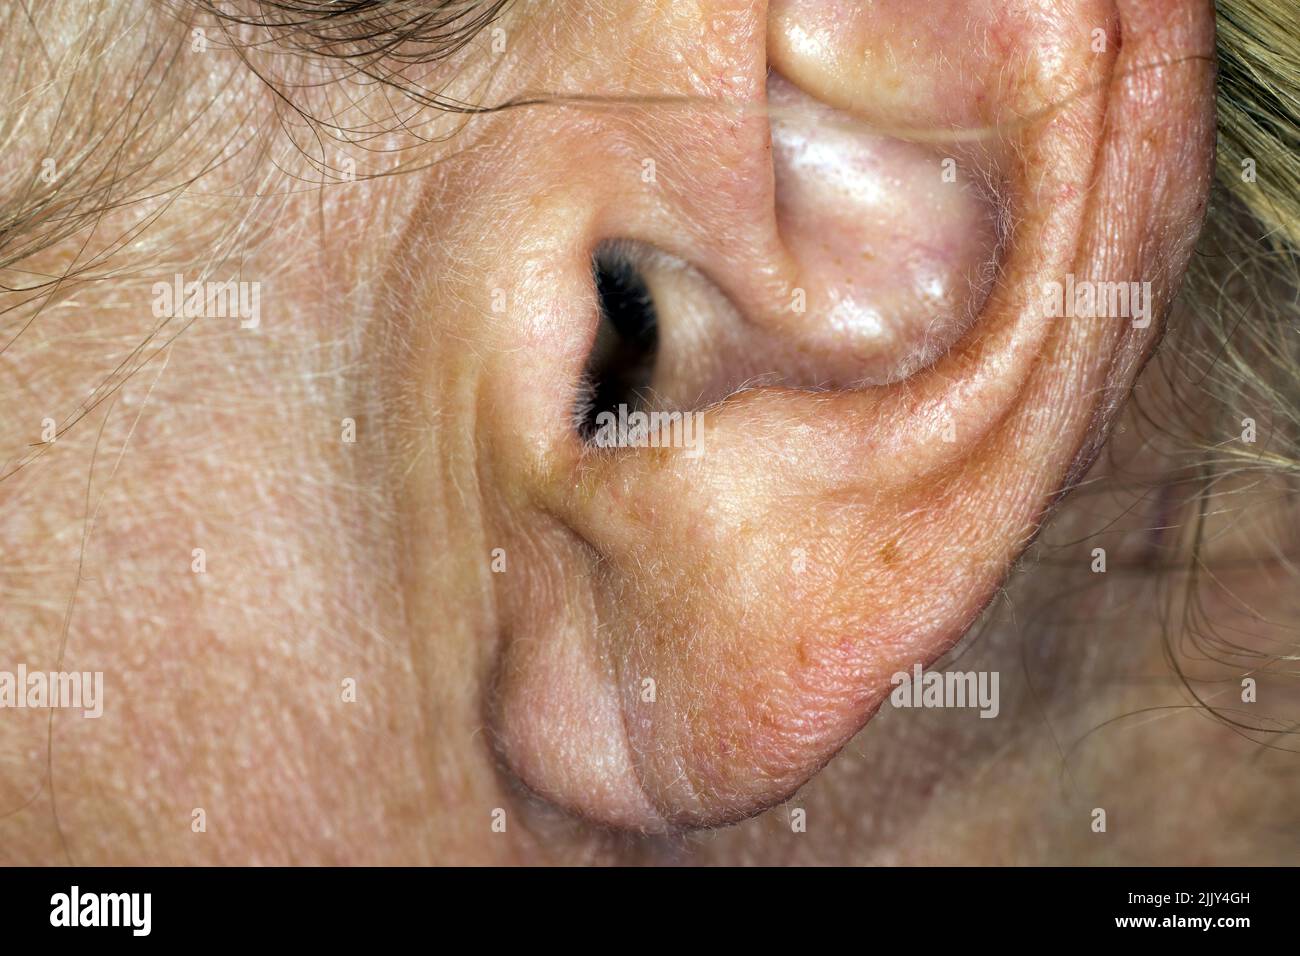 Ear of an elder woman Stock Photo